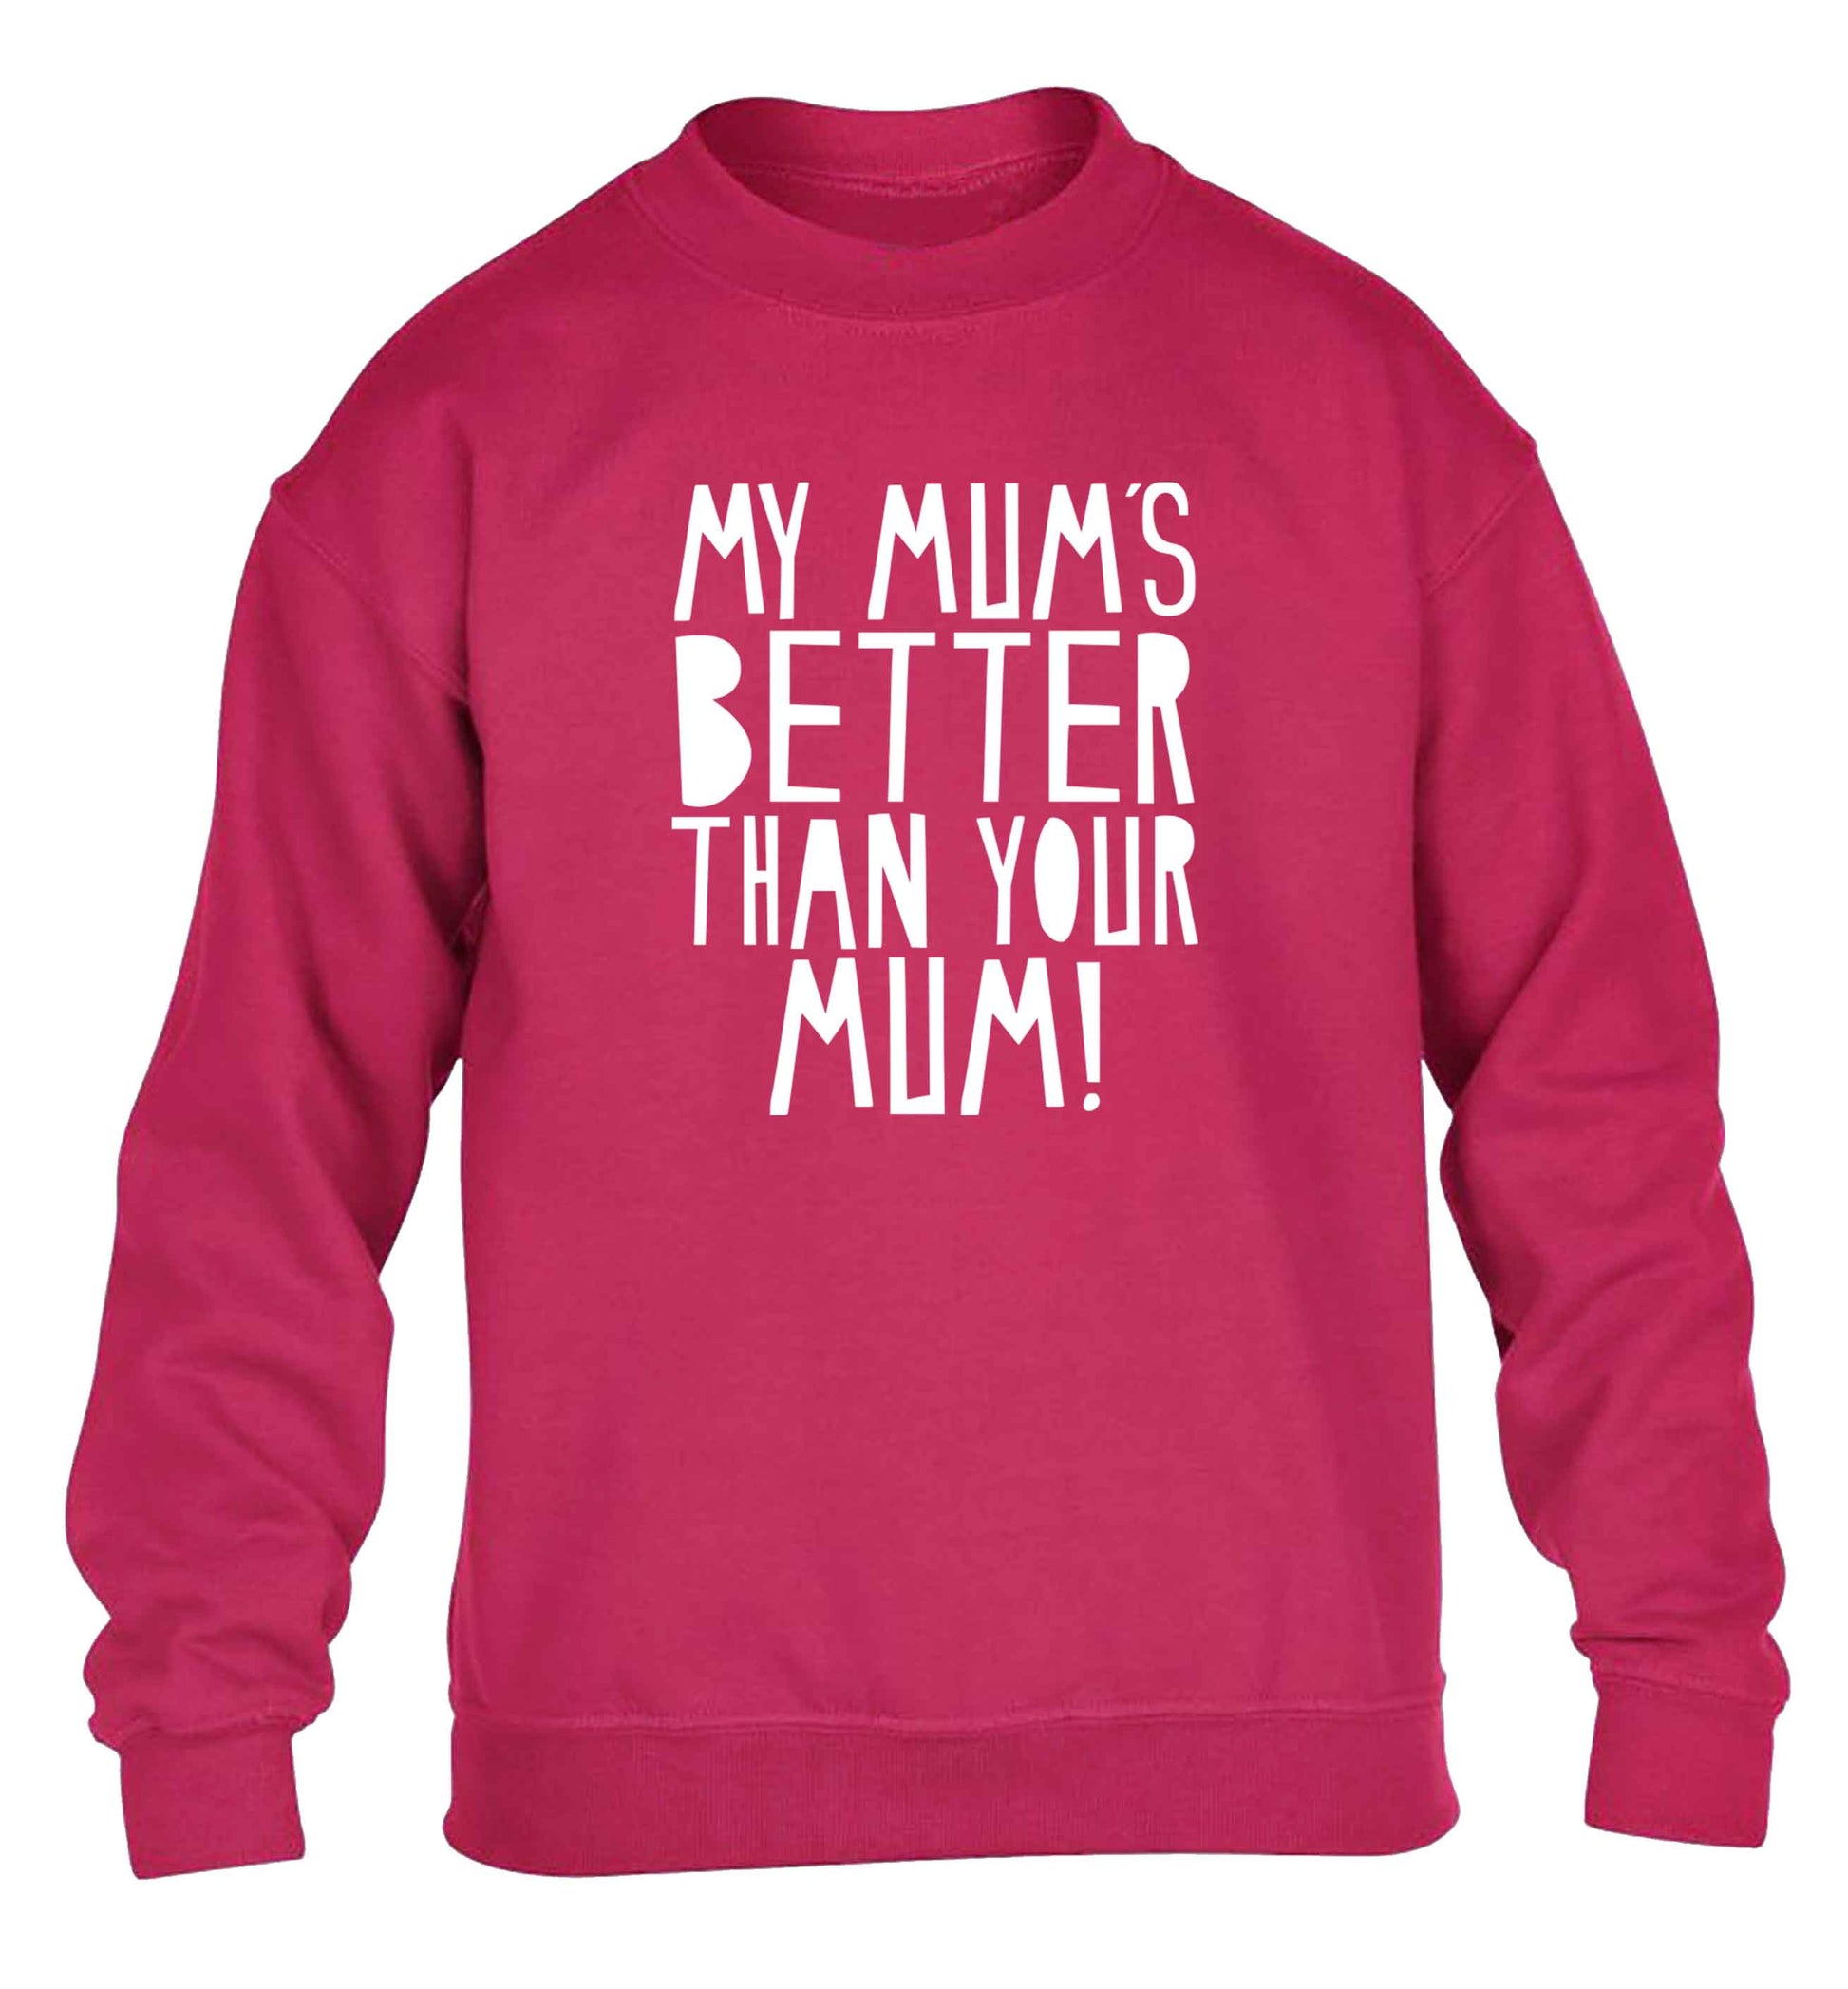 My mum's better than your mum children's pink sweater 12-13 Years